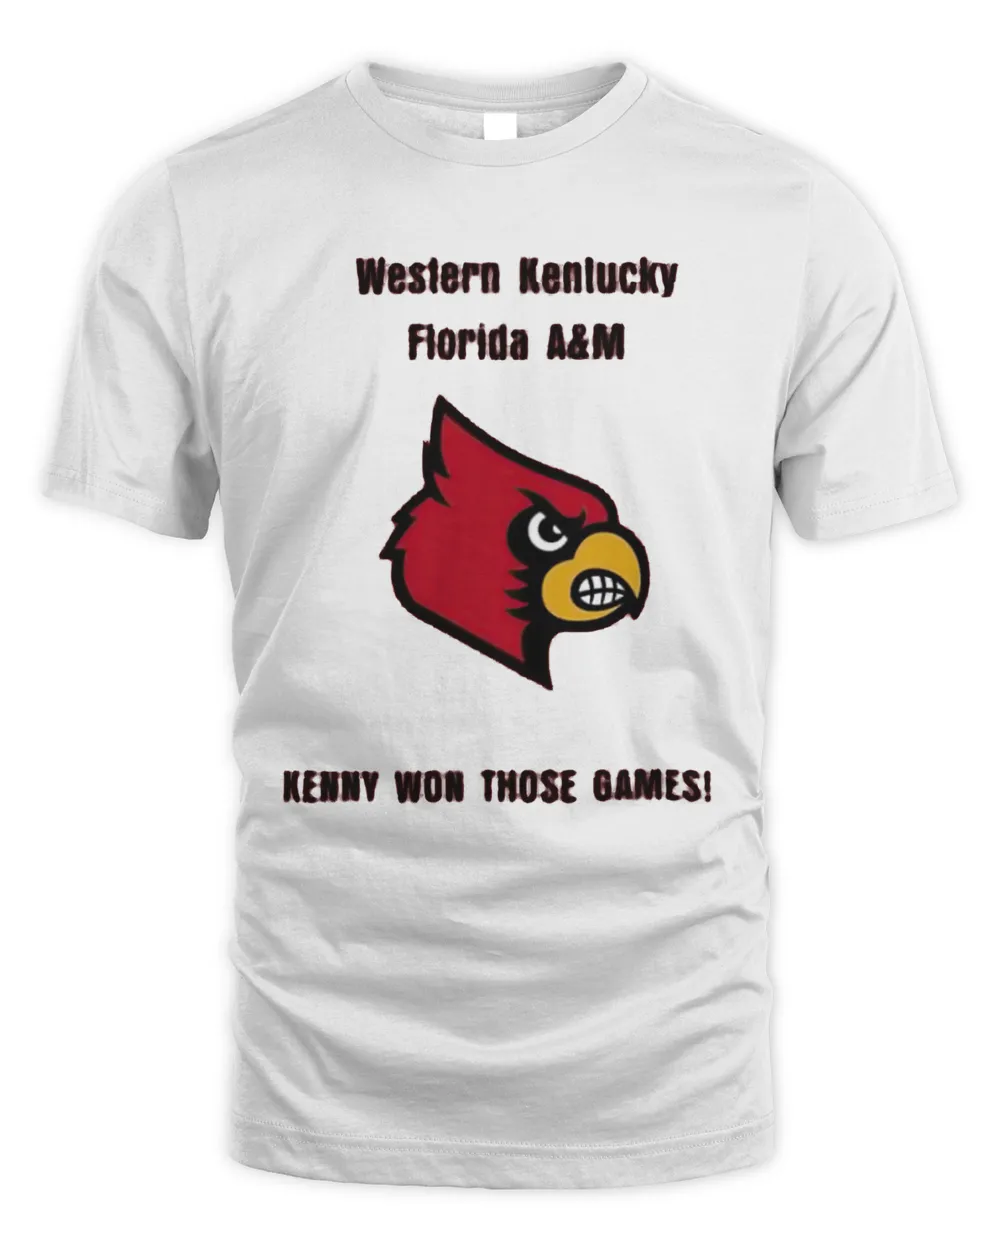 Cardinals western Kentucky Florida A&M Kenny won those games shirt